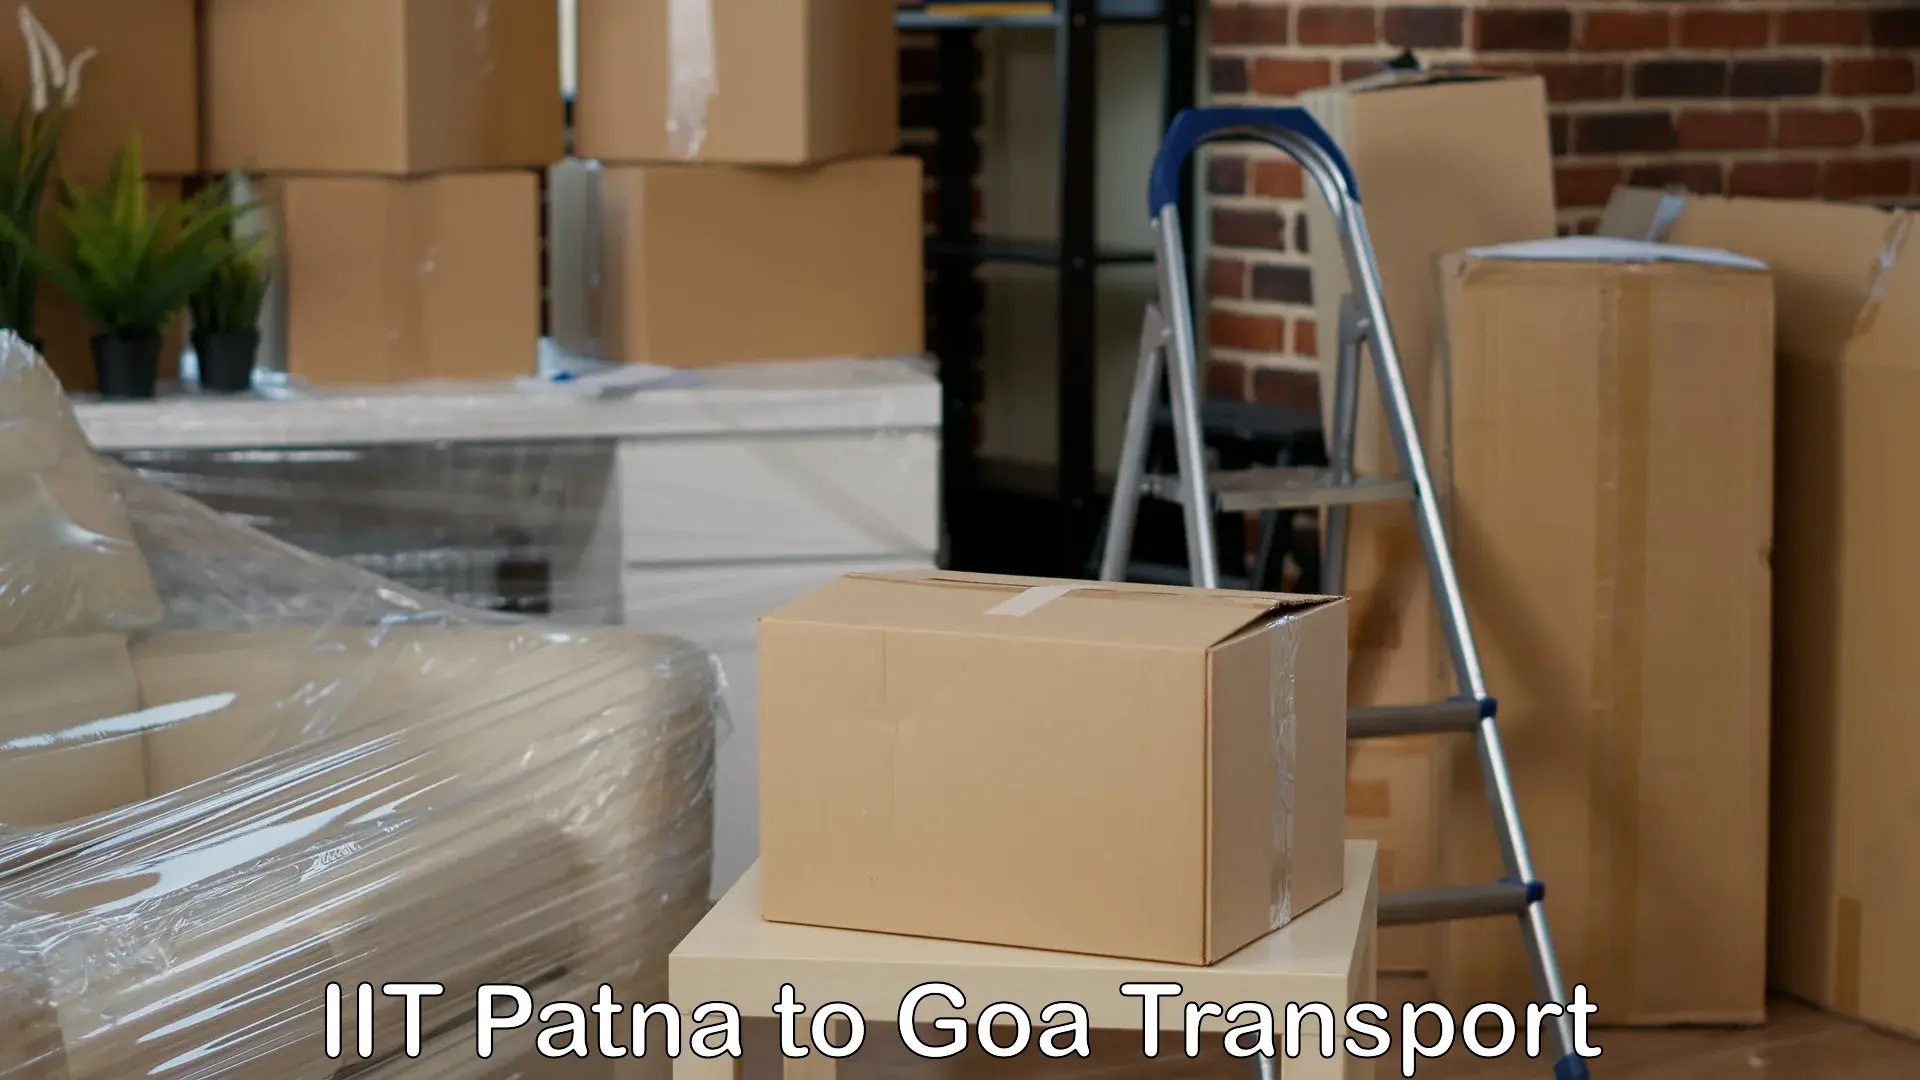 Door to door transport services IIT Patna to Panaji